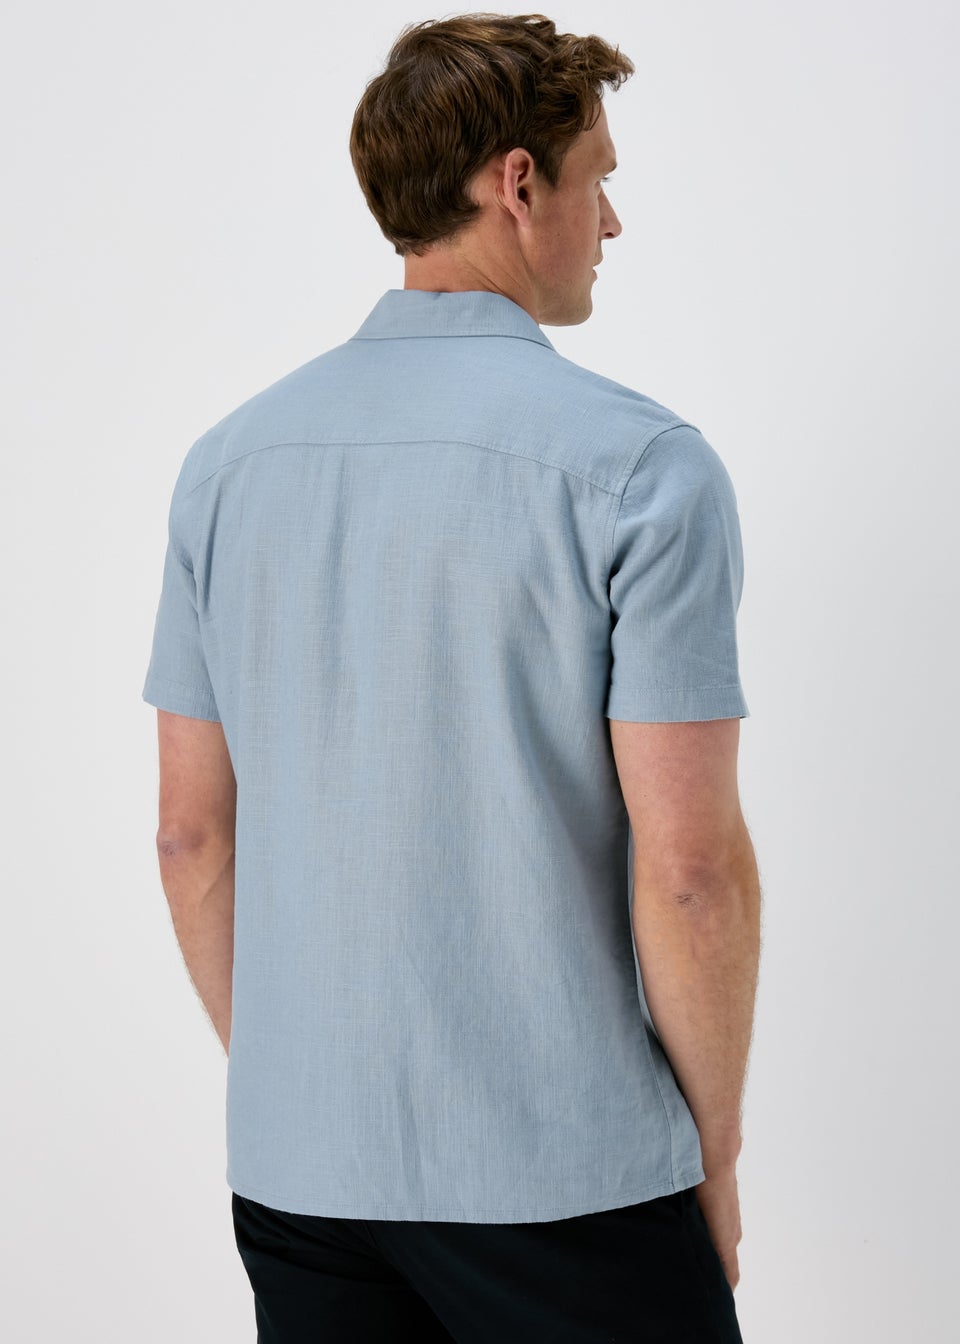 Men's Long Sleeve Shirts - Matalan